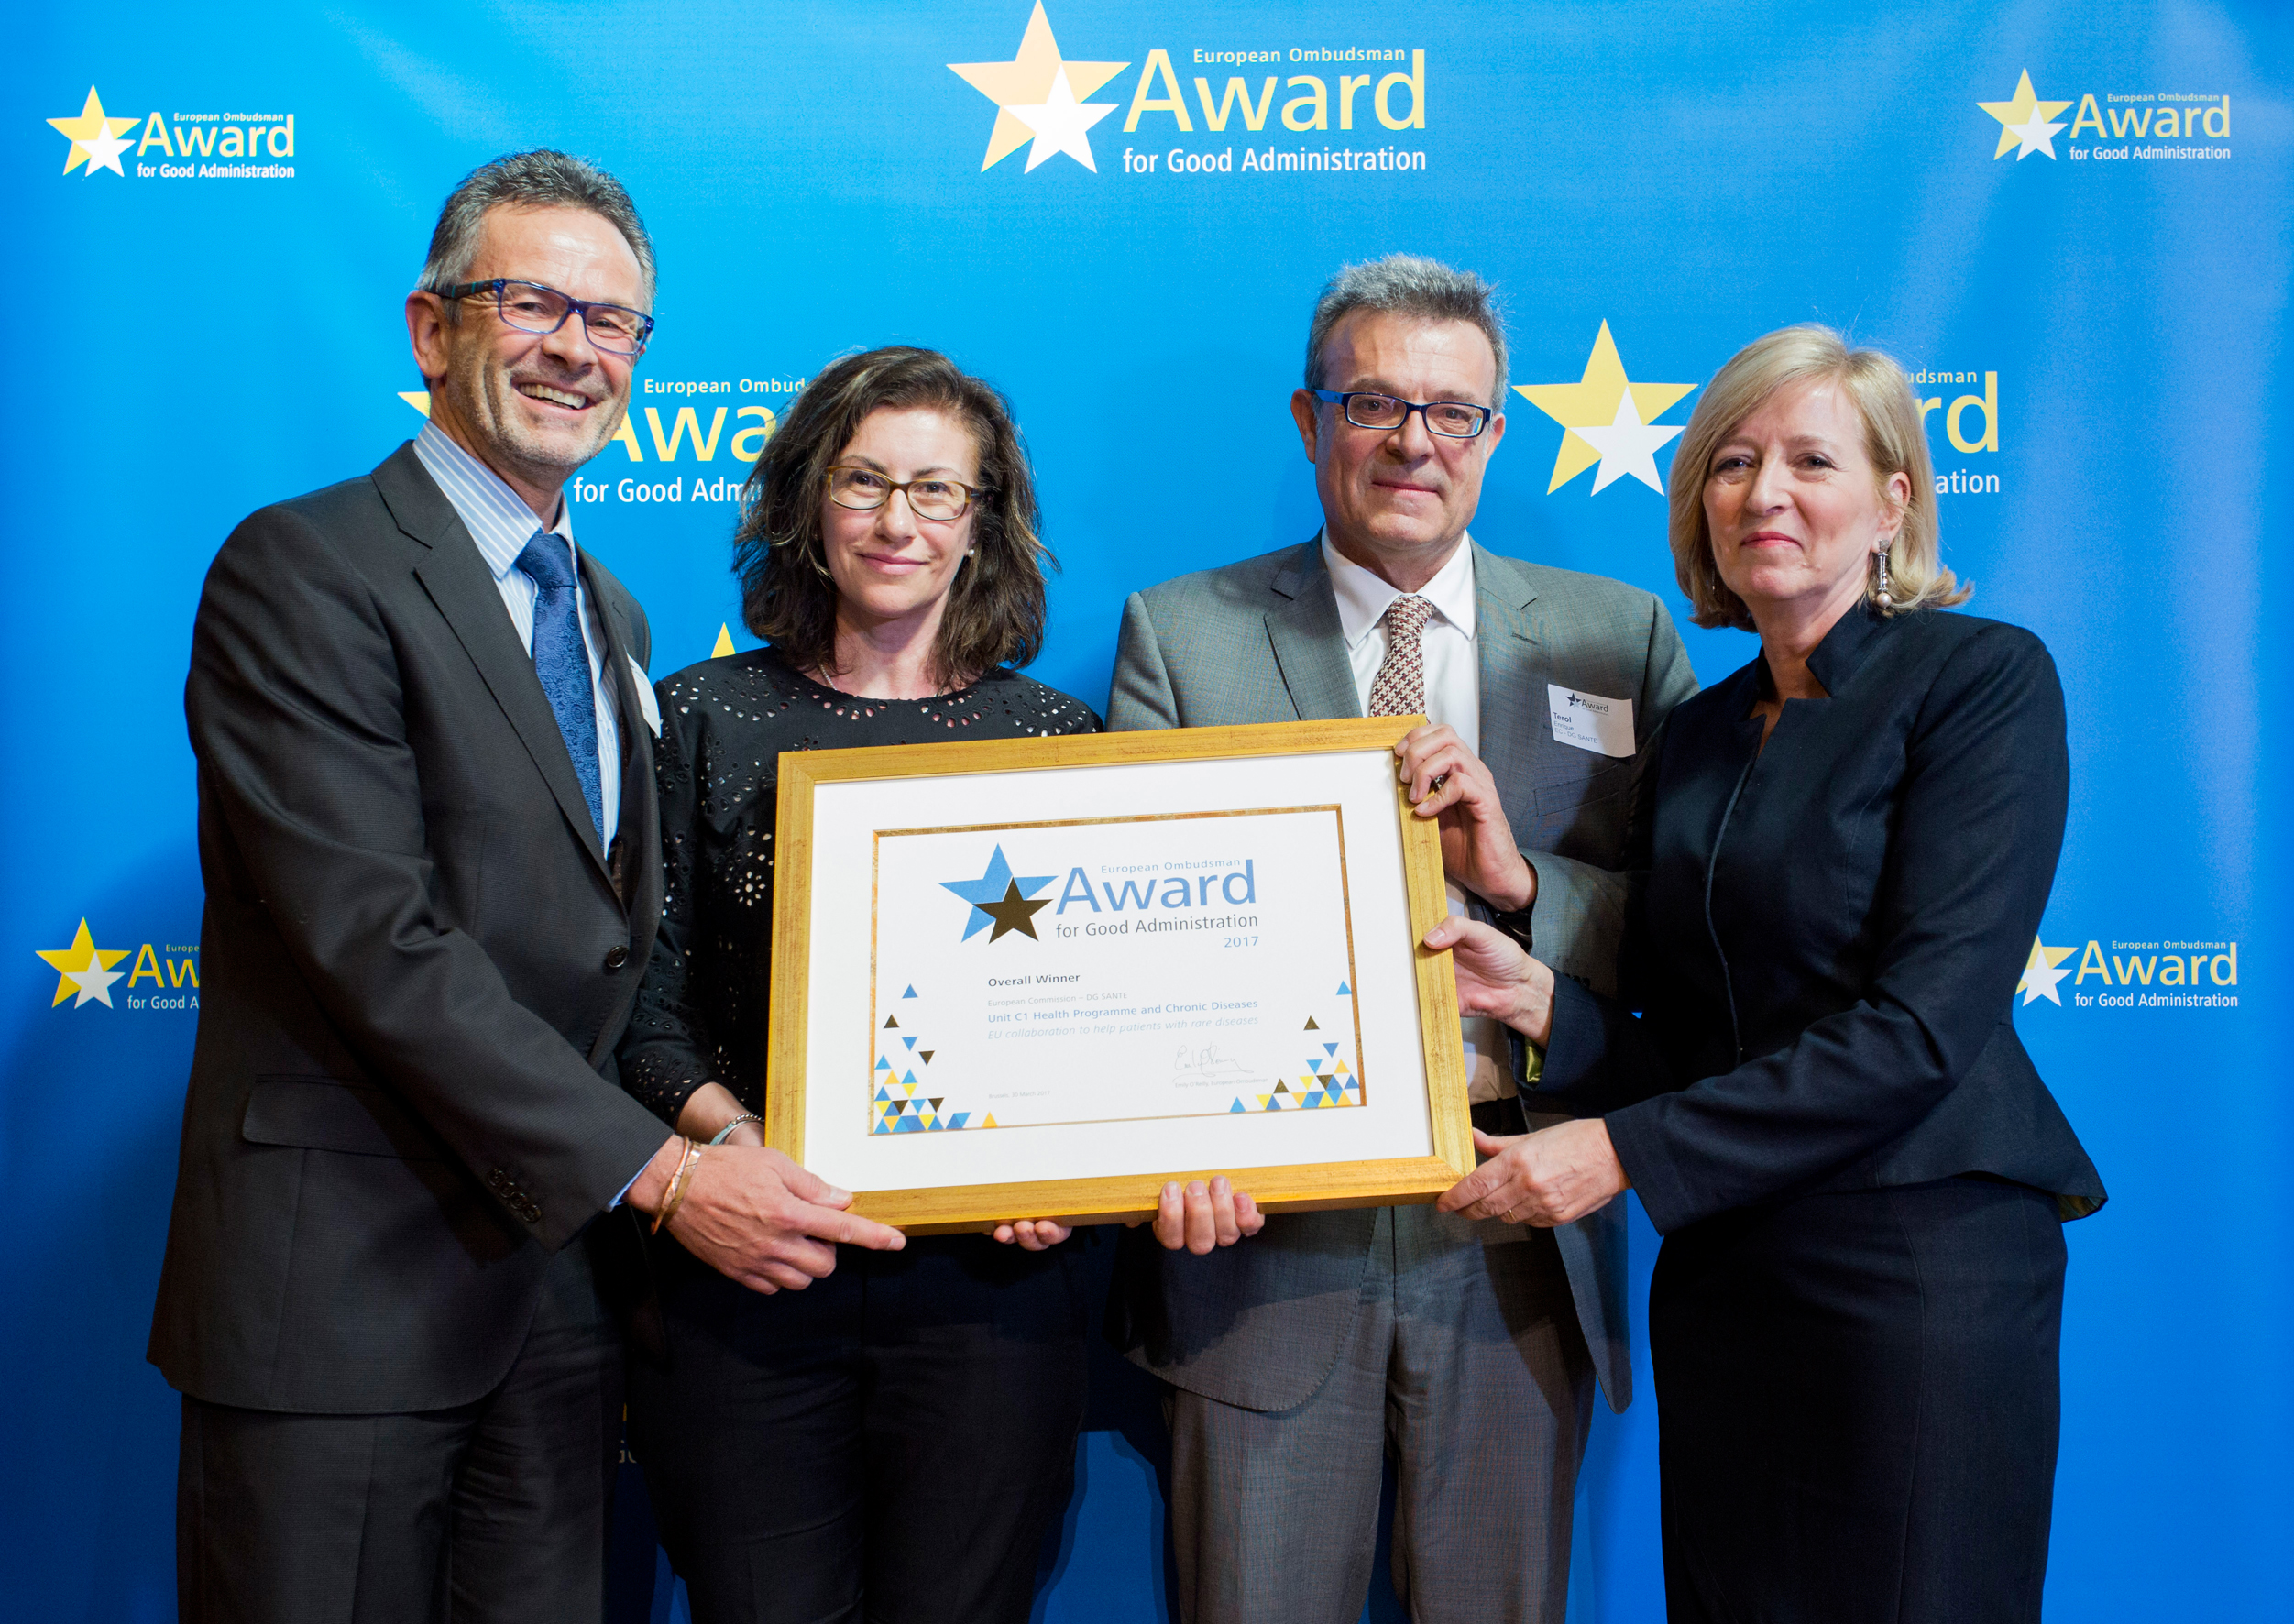 Носителите на наградата на Европейския омбудсман за добро управление за 2017 г. от генерална дирекция „Здравеопазване и безопасност на храните“ на Комисията получават своето отличие от Европейския омбудсман Емили О’Райли.